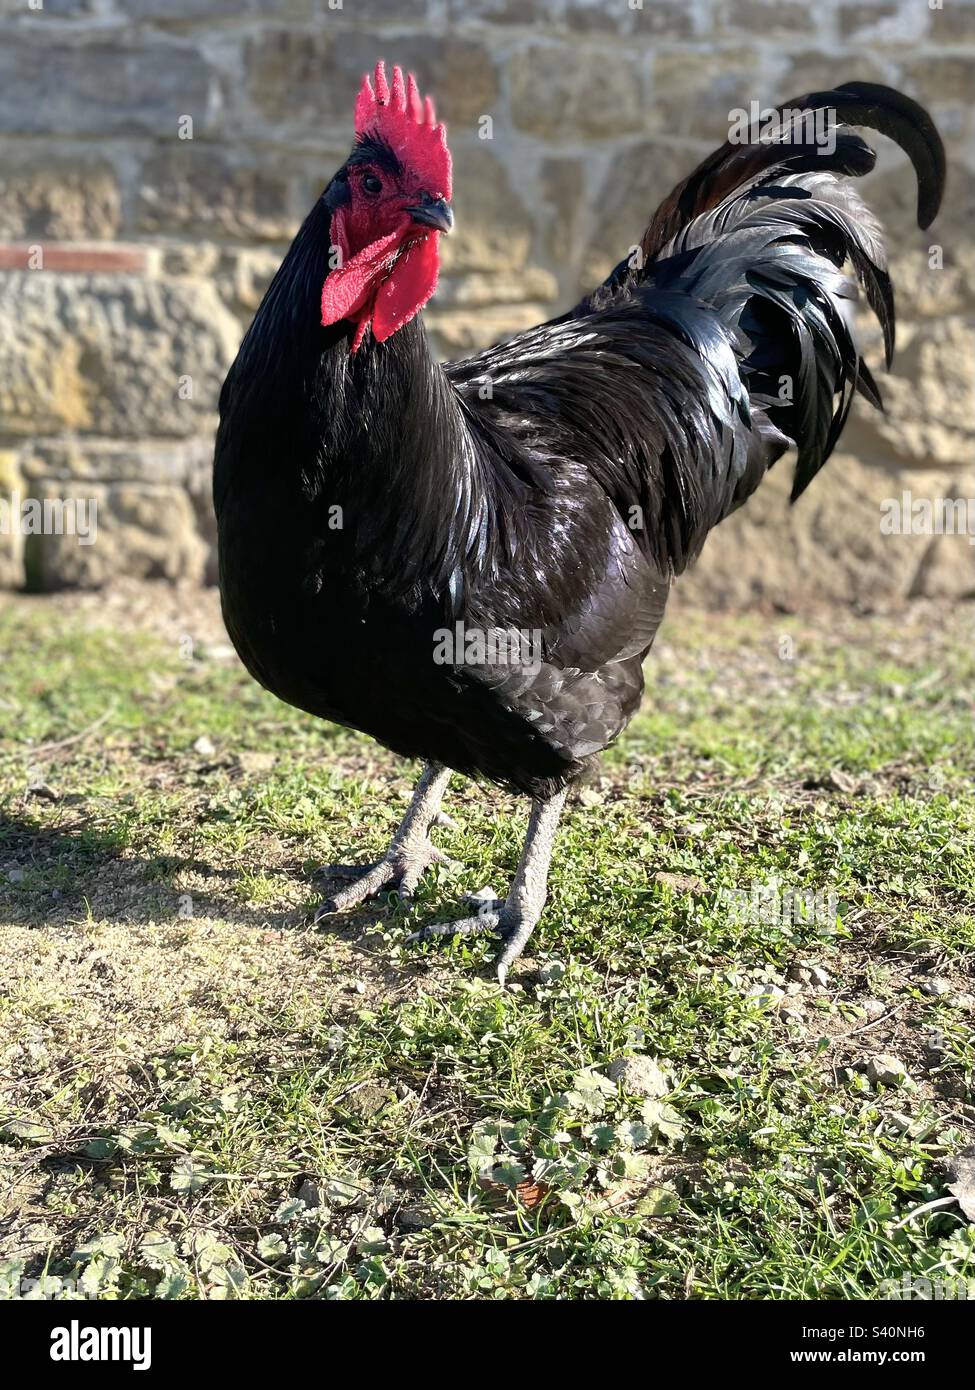 Le jeune rooster Australorp, avec un regard heureux, est debout au soleil à côté d'une grange de ferme avec une pierre. Ses plumes sont noires et vertes et brillantes et sa queue est élégante. Banque D'Images